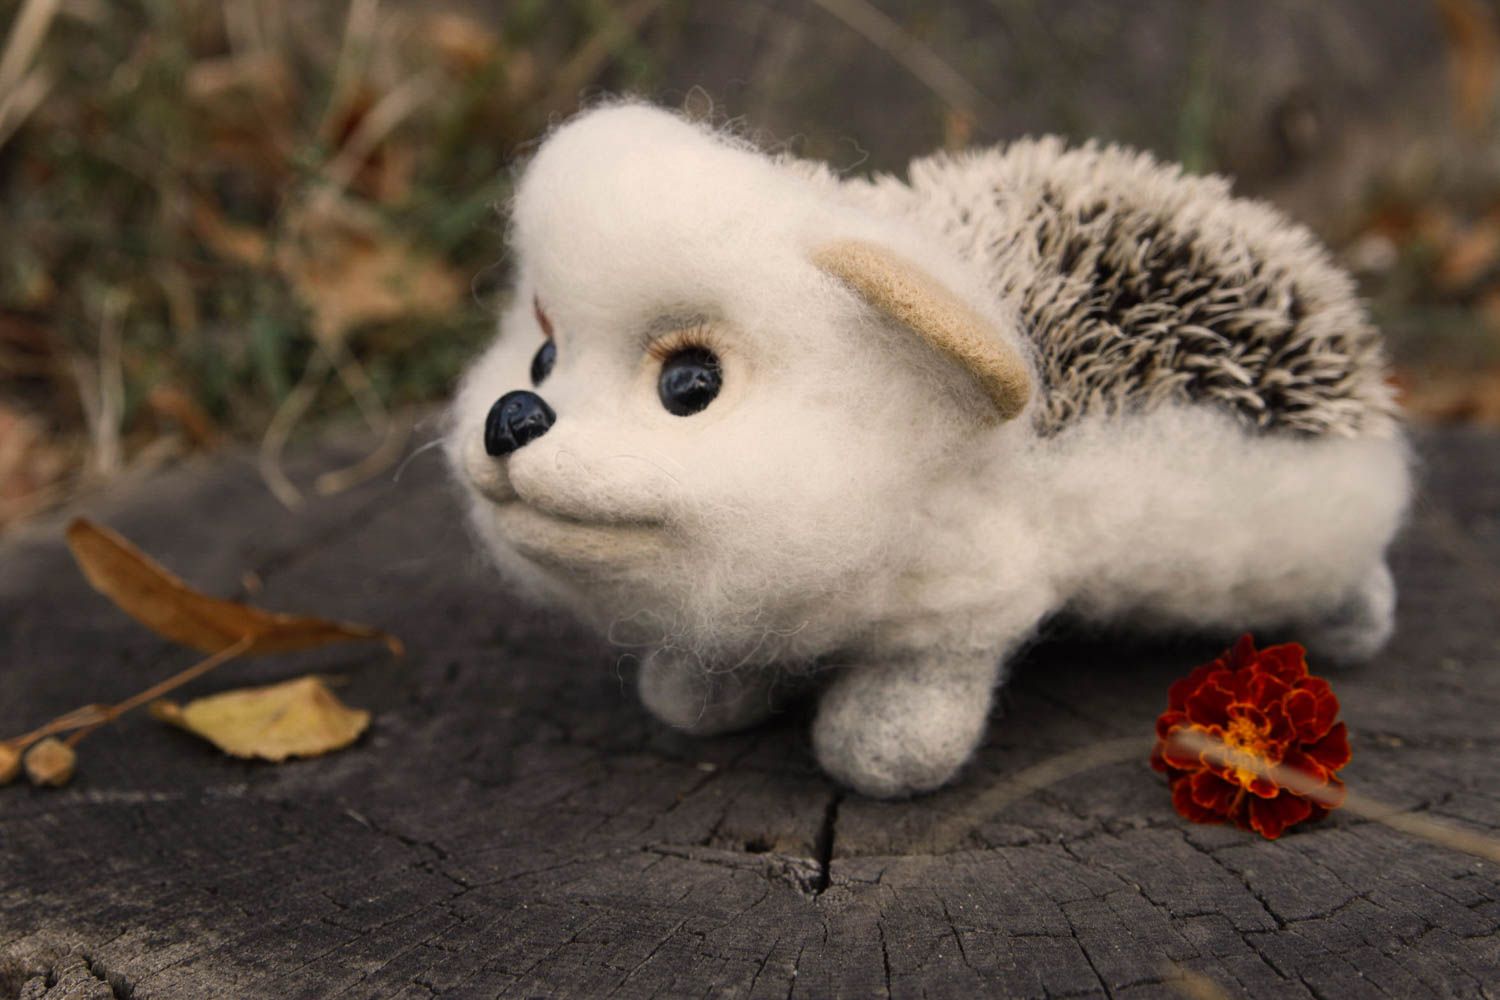 Handmade kleines Spielzeug Geschenk Idee Kuscheltier Igel Filz Tier aus Wolle foto 1